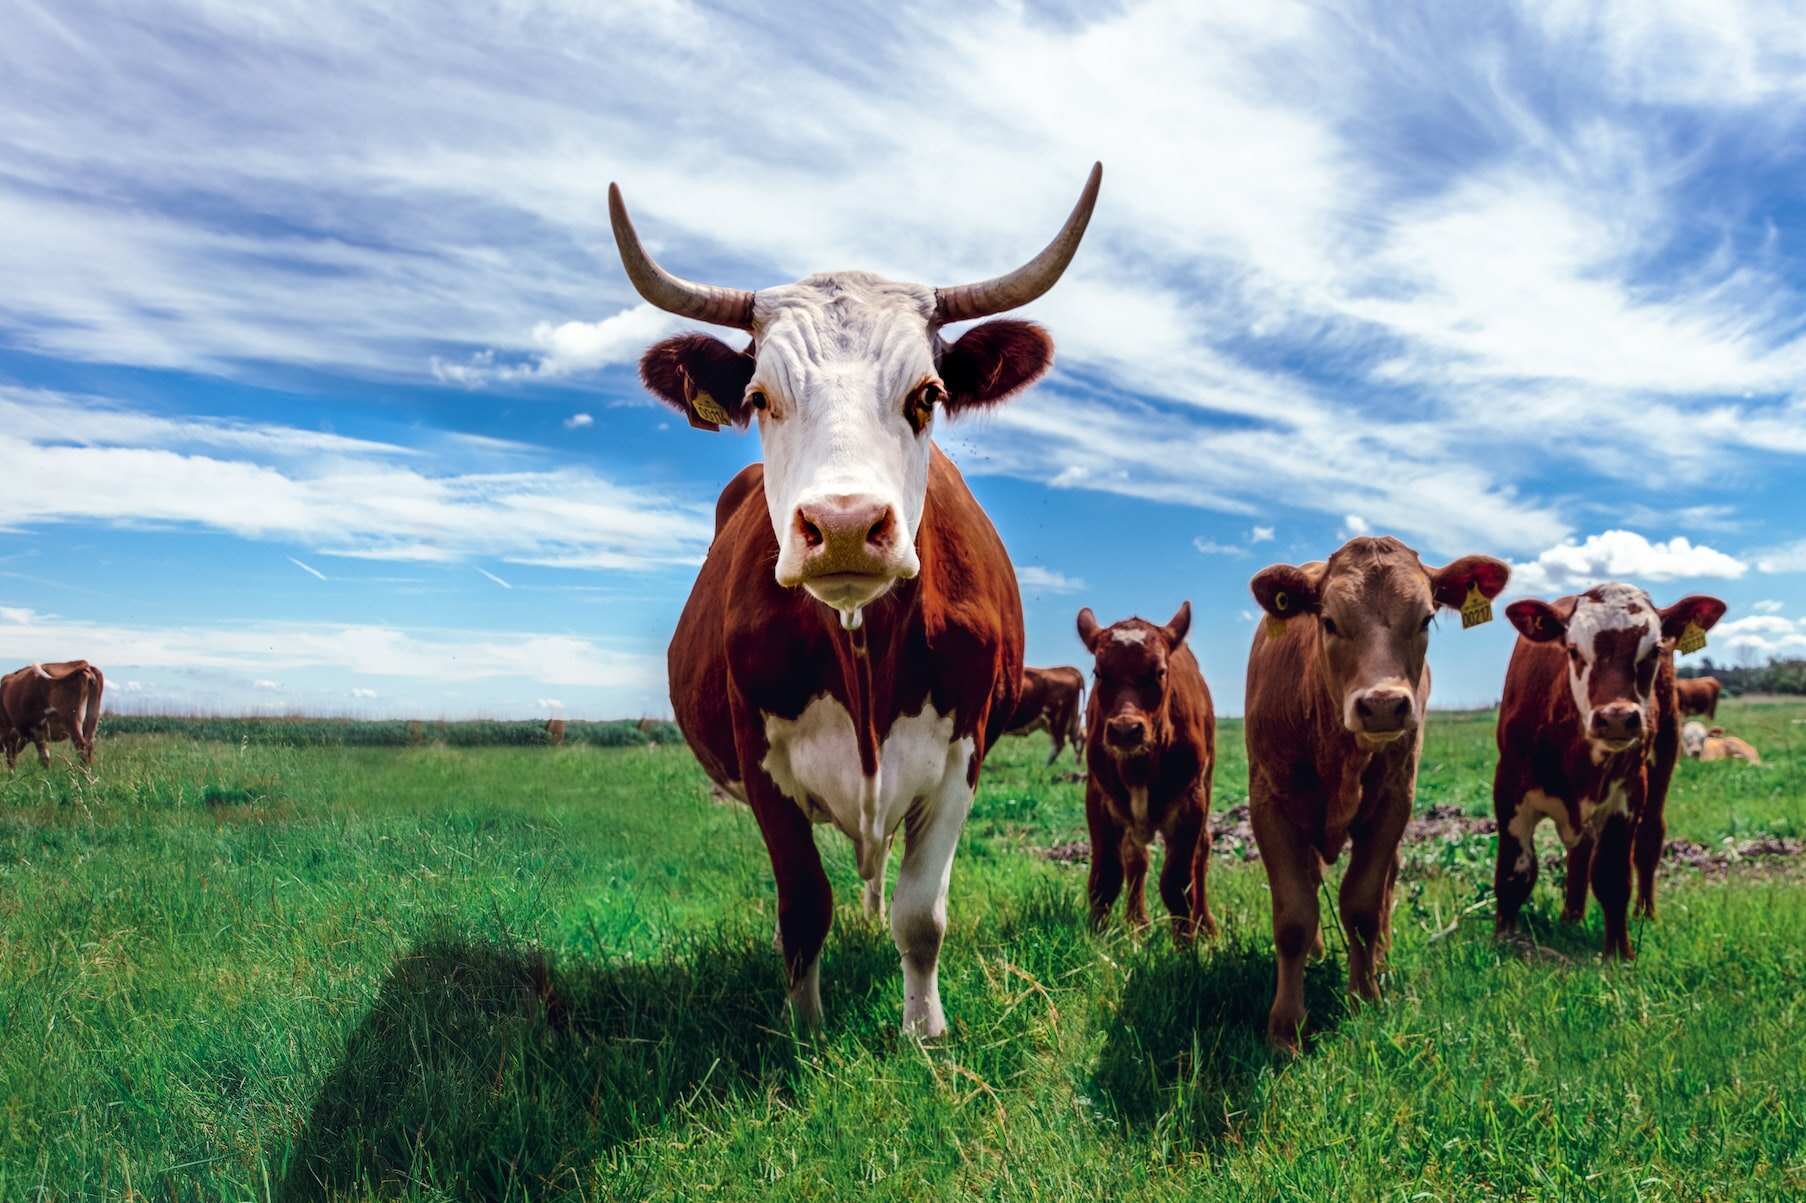 Навоза от 5 коров хватит, чтобы совершить кругосветное путешествие. Не верите